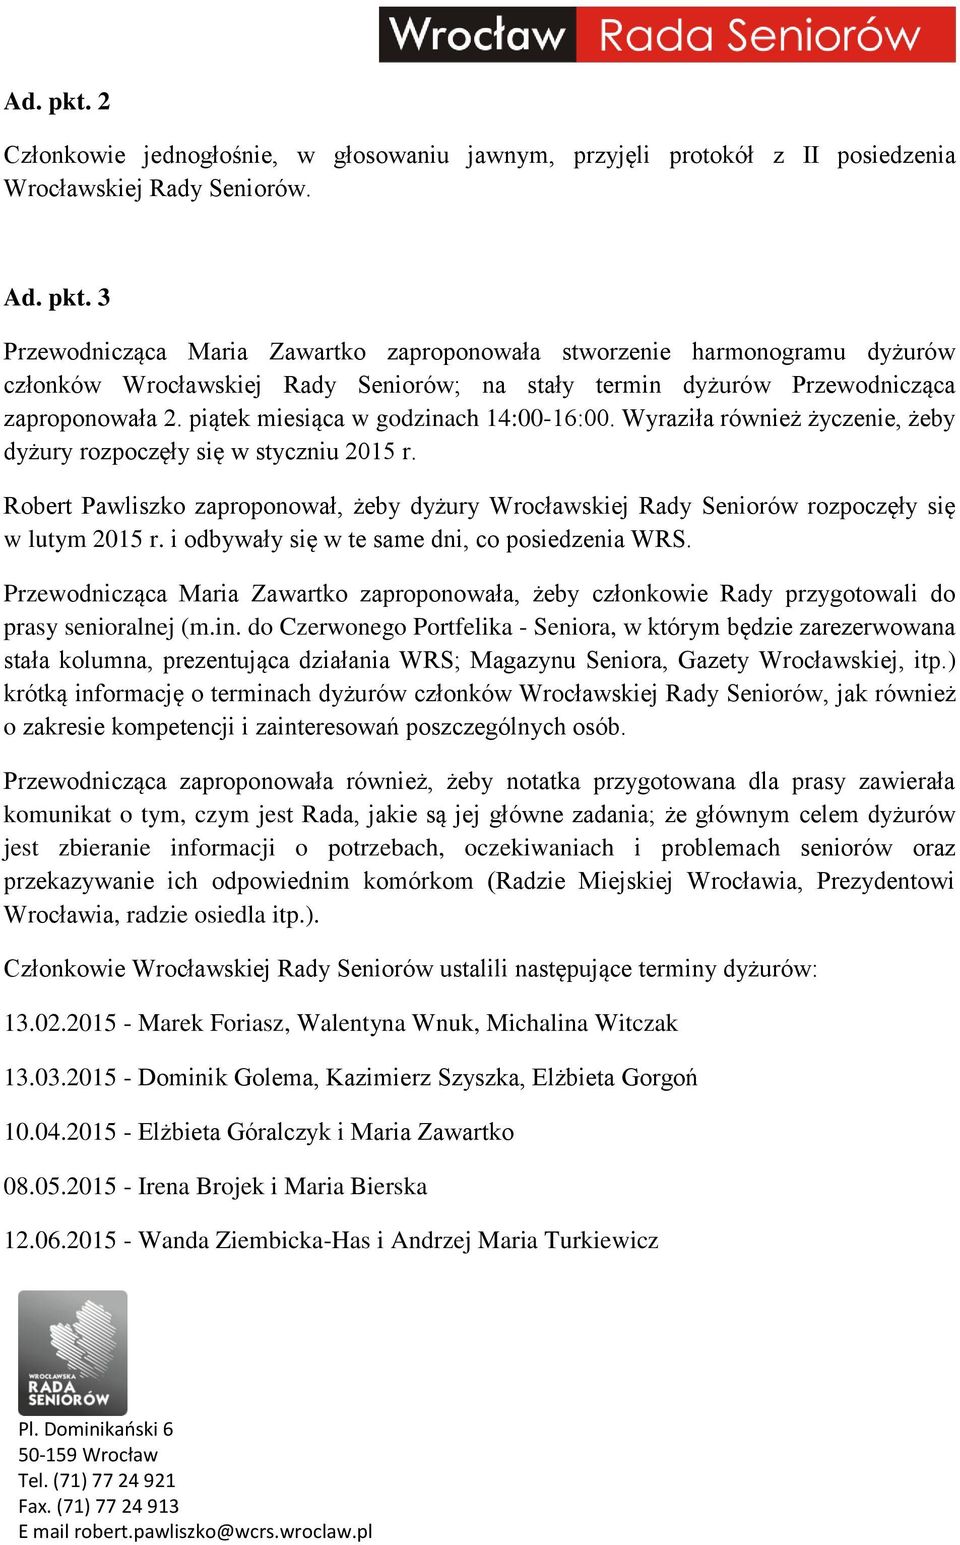 Robert Pawliszko zaproponował, żeby dyżury Wrocławskiej Rady Seniorów rozpoczęły się w lutym 2015 r. i odbywały się w te same dni, co posiedzenia WRS.